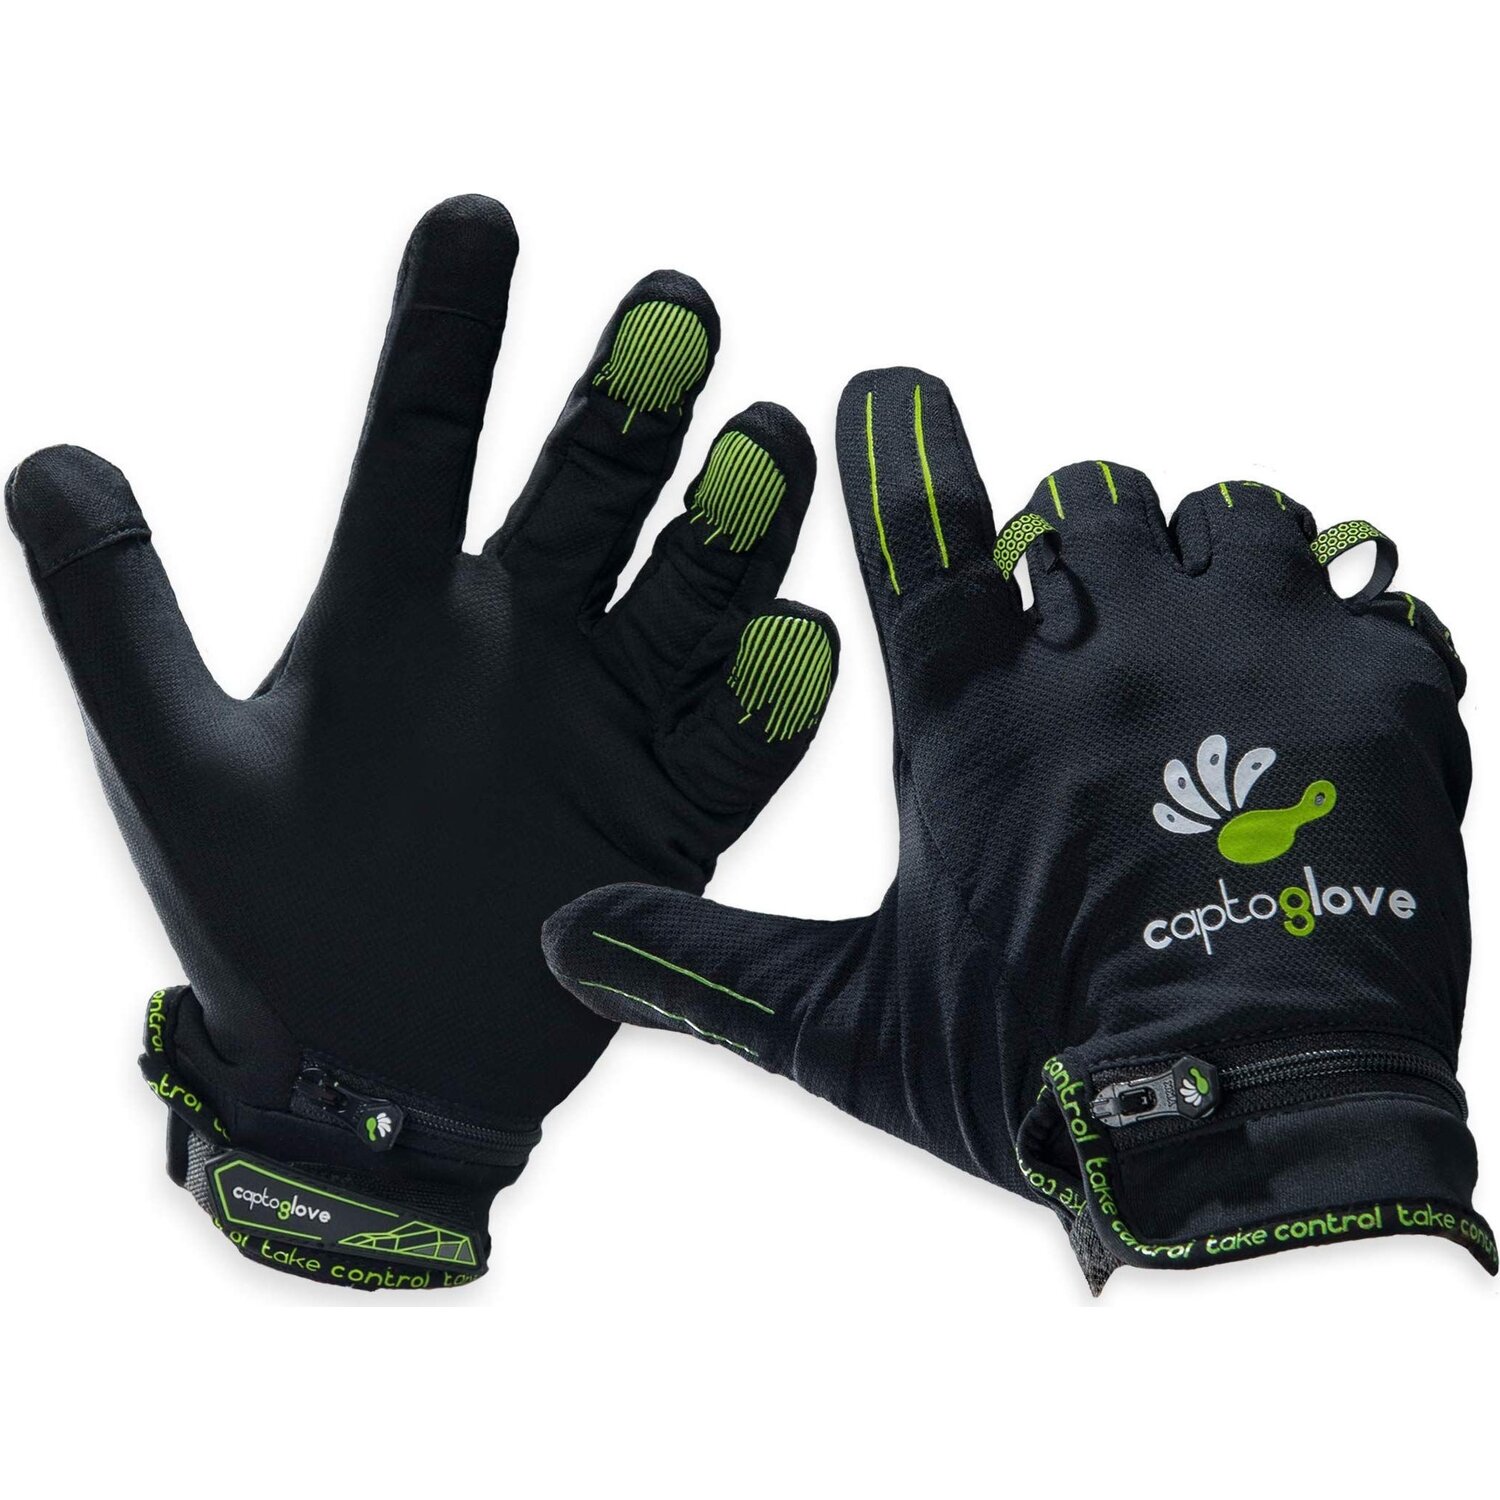 Перчатки игры купишь. Перчатки - контроллеры CAPTOGLOVE. Перчатки_Senso_Glove. CAPTOGLOVE перчатки VR. Перчатки контроллеры для VR.